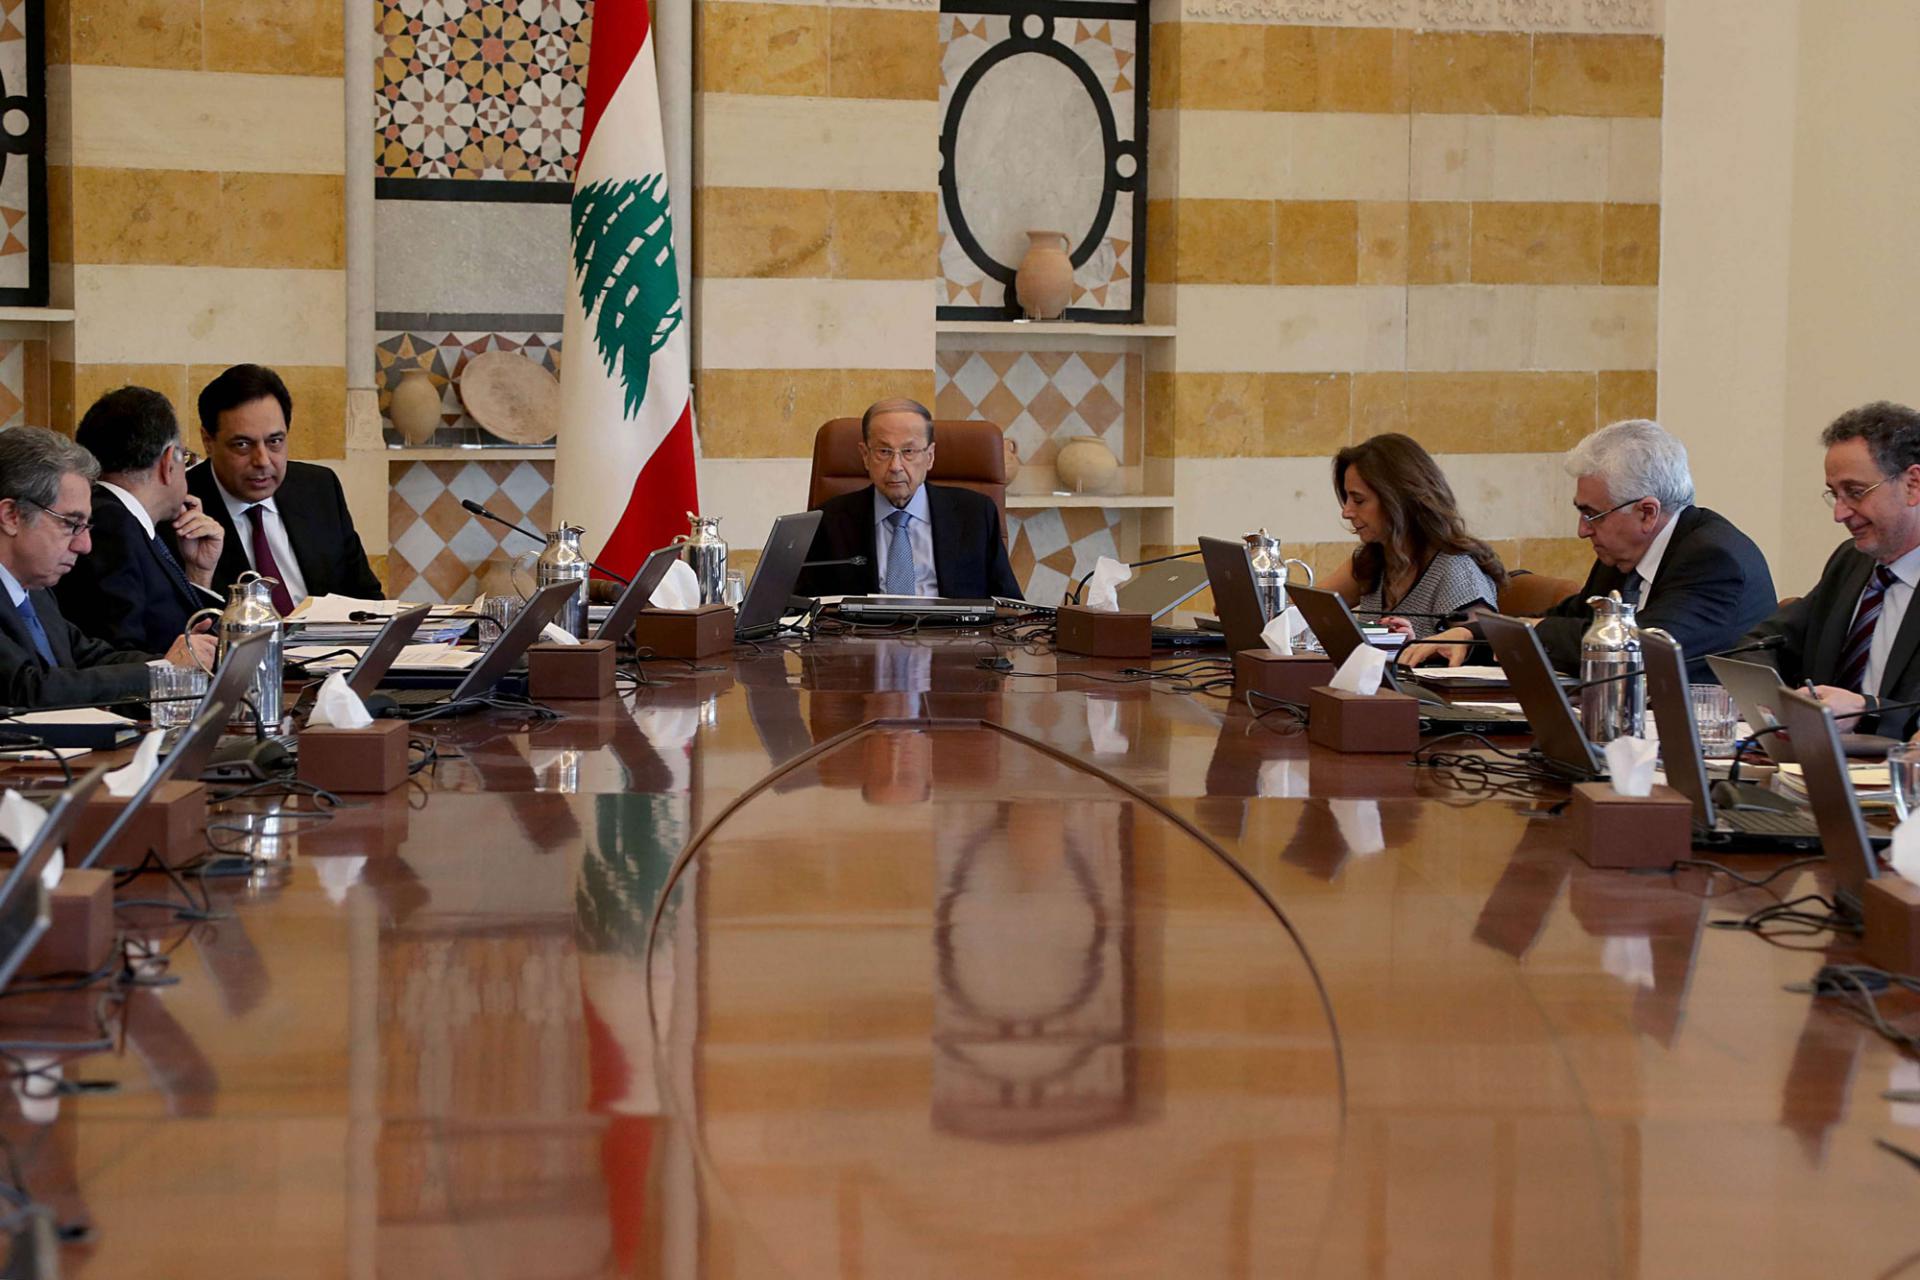 ازمة الديون على طاولة الاجتماع الحكومي في لبنان